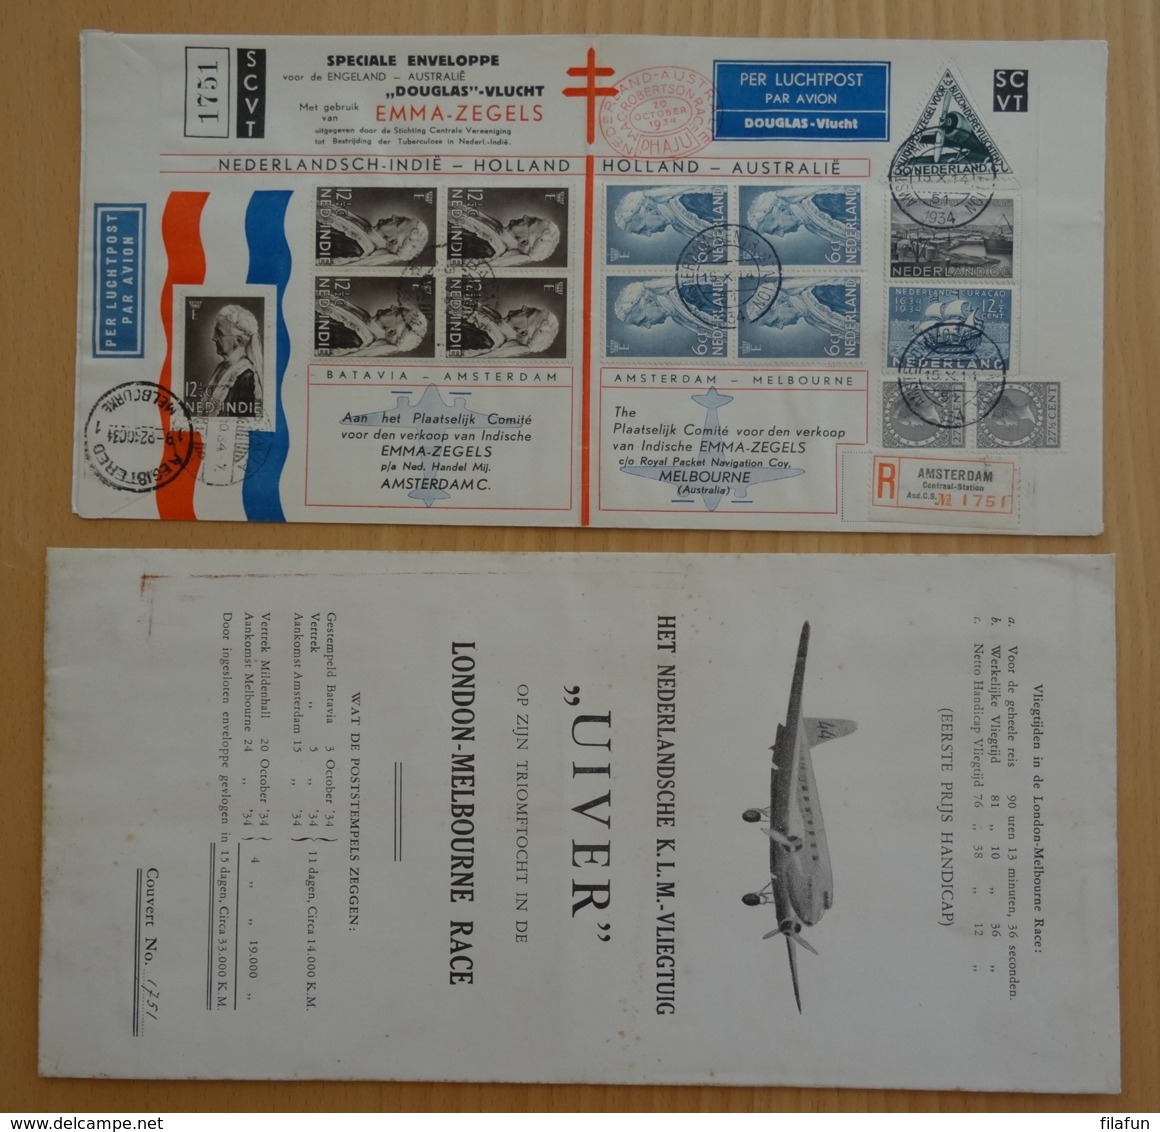 Nederlands Indië - 1934 - Uiver Envelop London-Melbourne Race - Uitgave SCVT Met Originele Uiver-hoes - Nummer 1751 - Nederlands-Indië